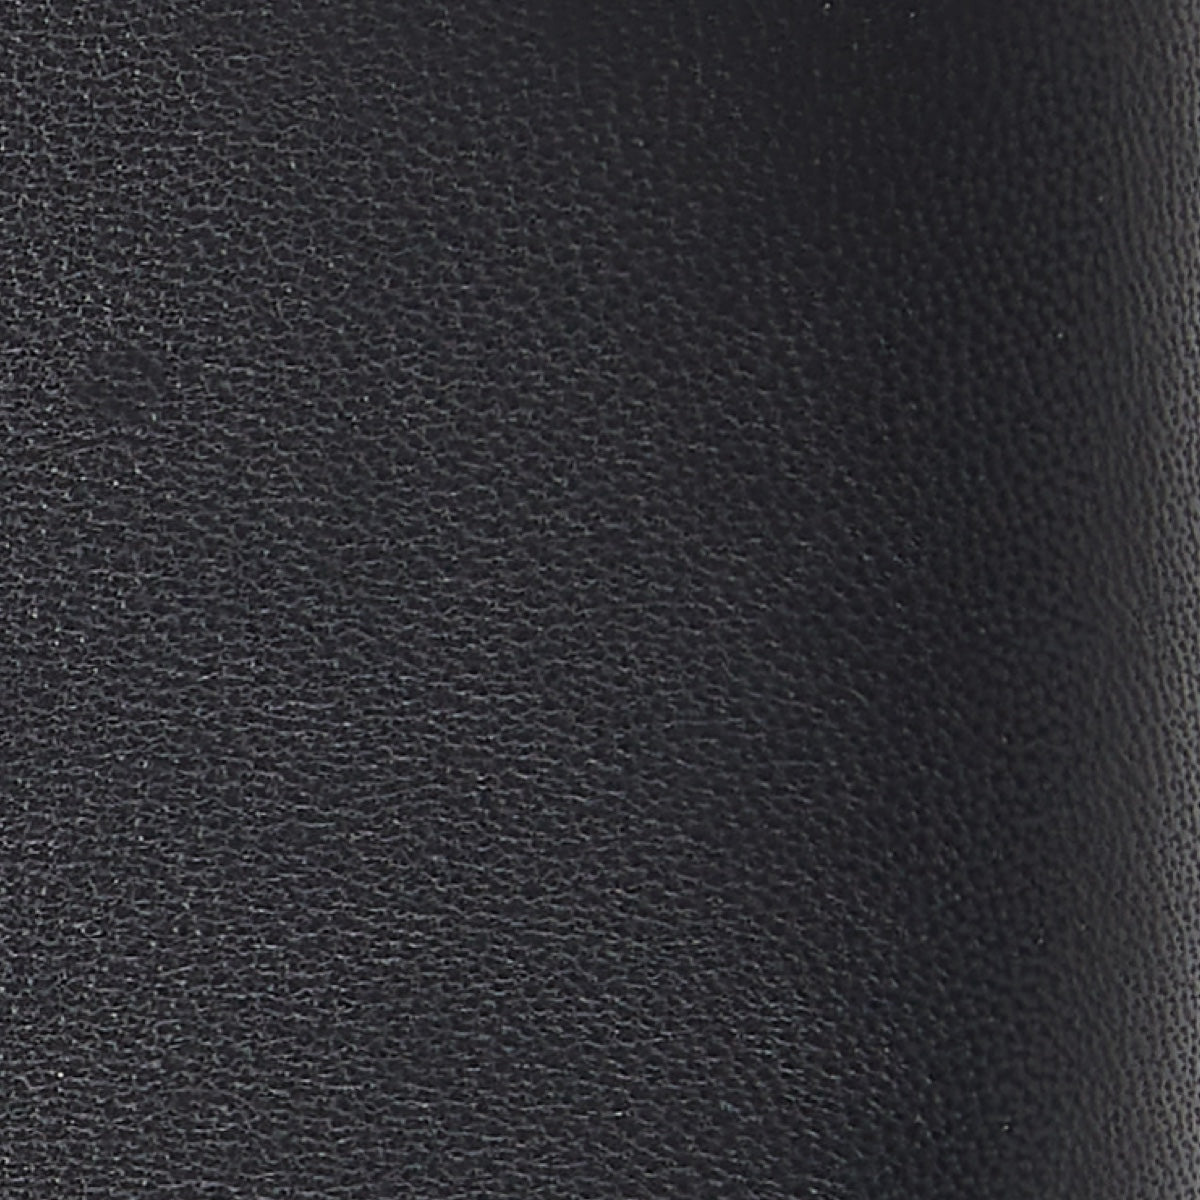 Luxury Leather Gloves Black Women Vera - Schwartz & von Halen® - Premium Leather Gloves - 3